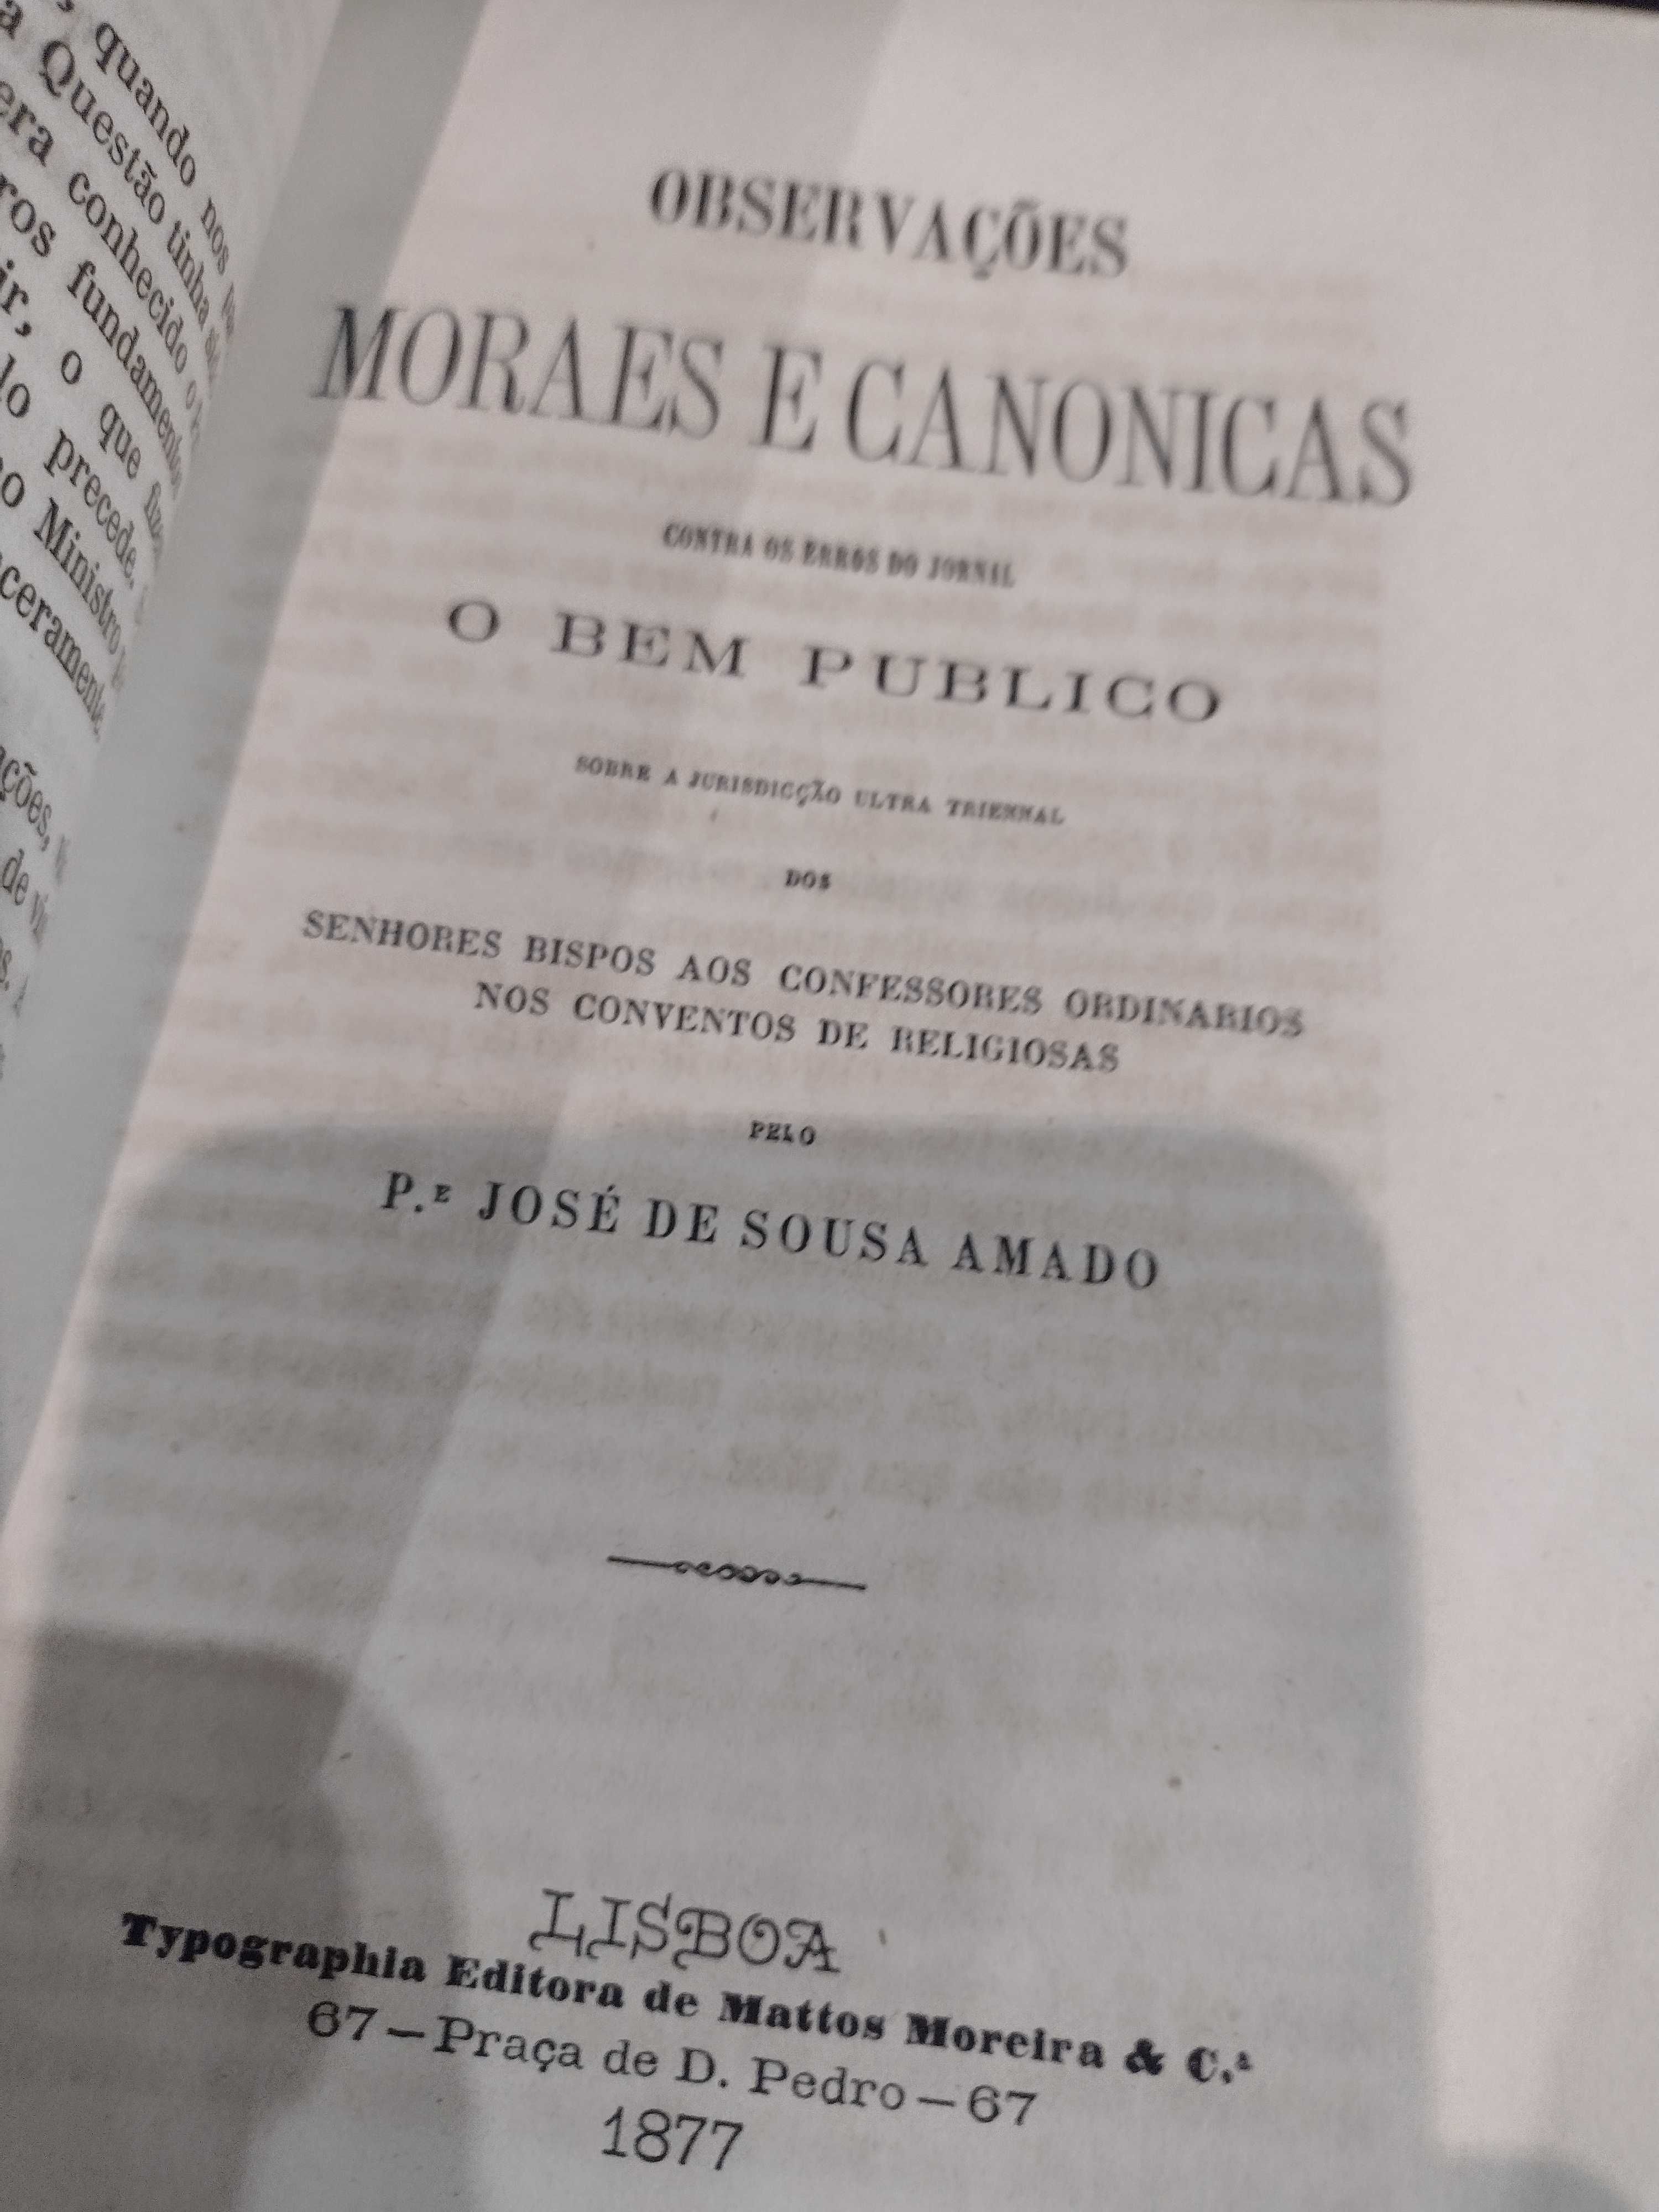 Padre José de Sousa Amado 1877 Observações Moraes e Canônicas